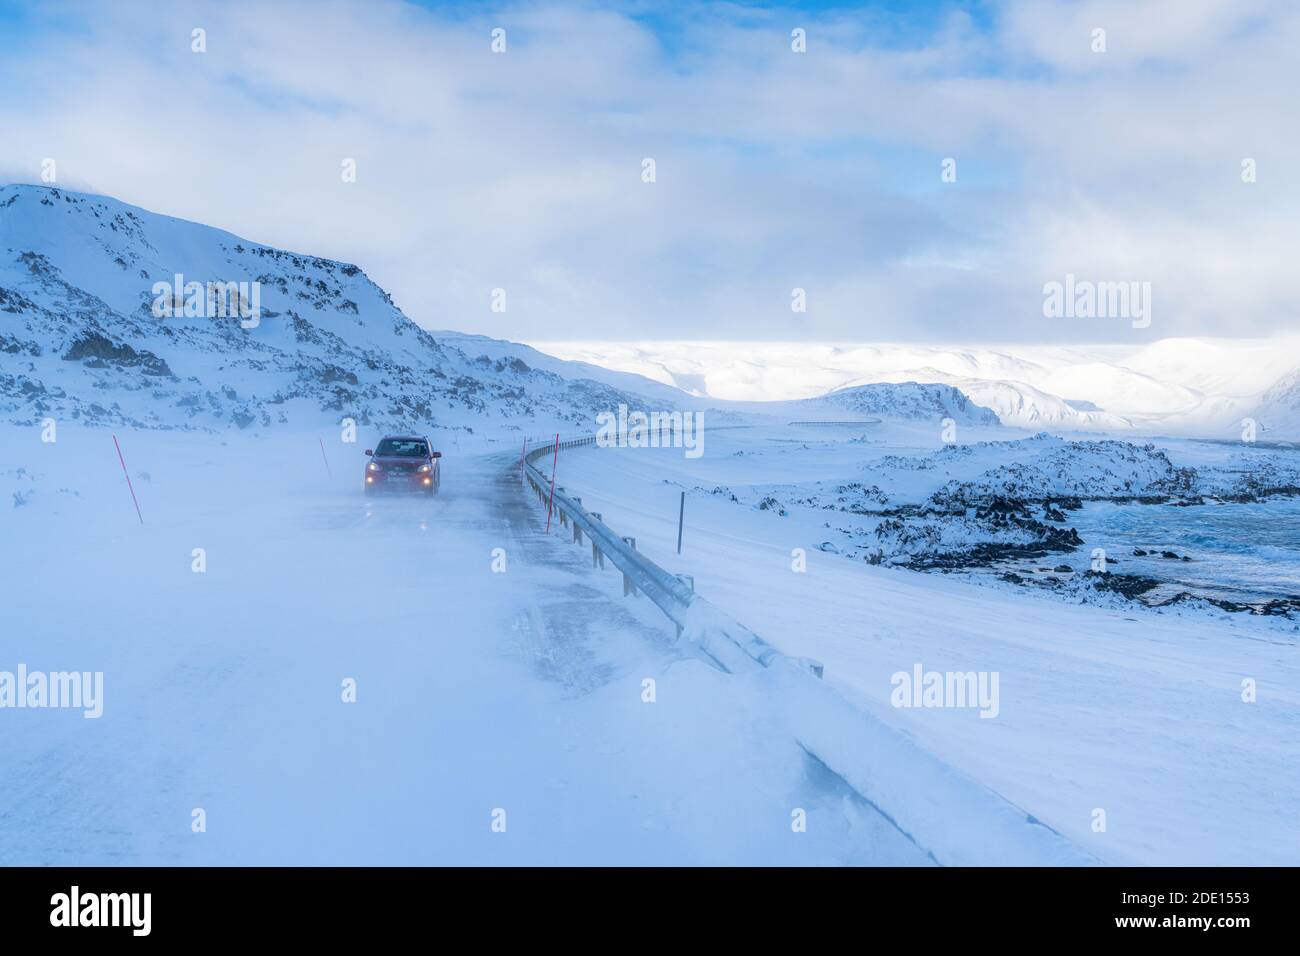 Voiture voyageant sur une route glacée vide le long de la côte enneigée de la mer froide de Barents, l'océan Arctique, la péninsule de Varanger, Finnmark, la Norvège, la Scandinavie, l'Europe Banque D'Images